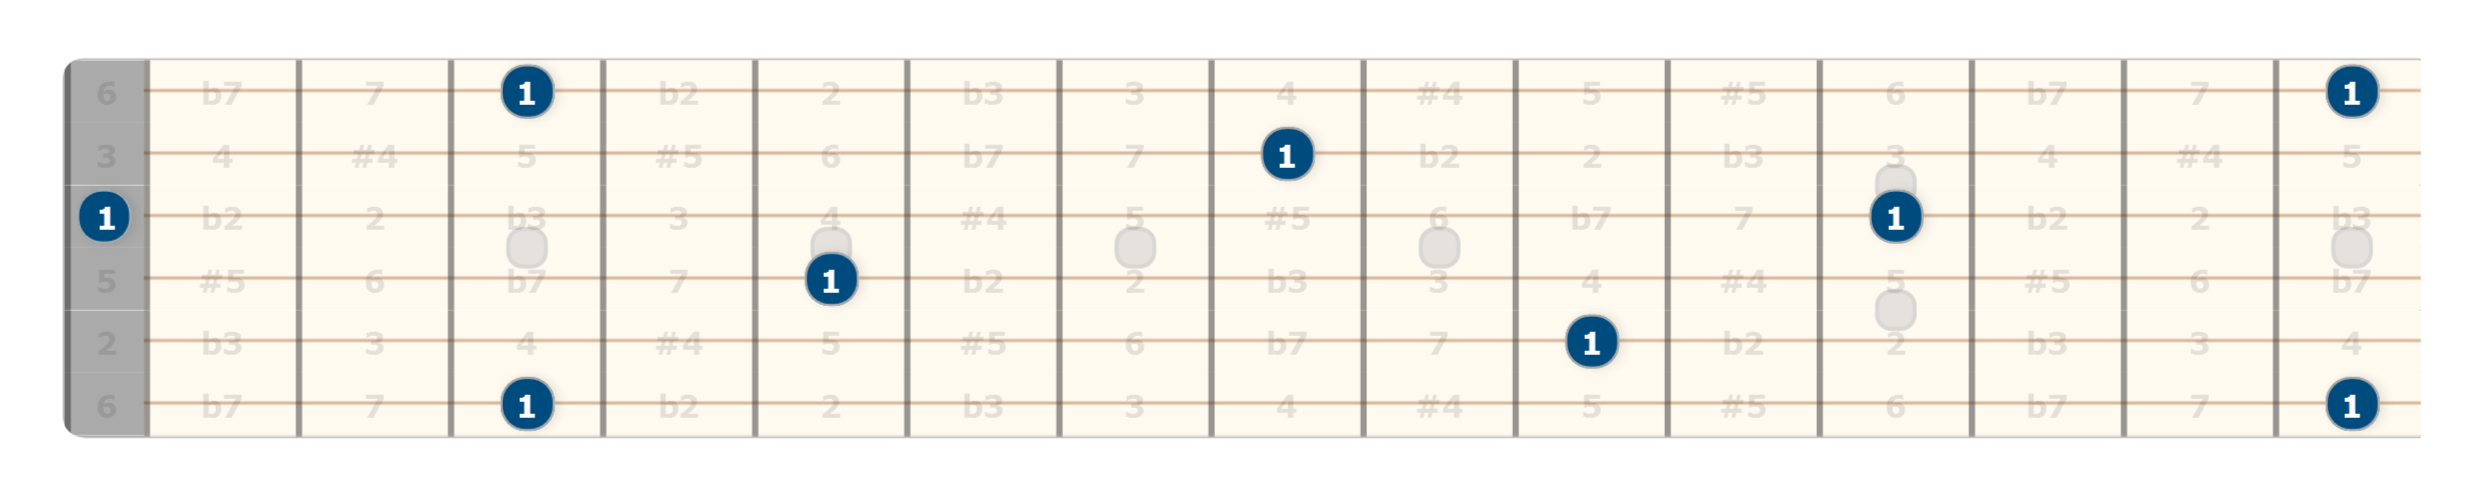 guitar intervals lesson